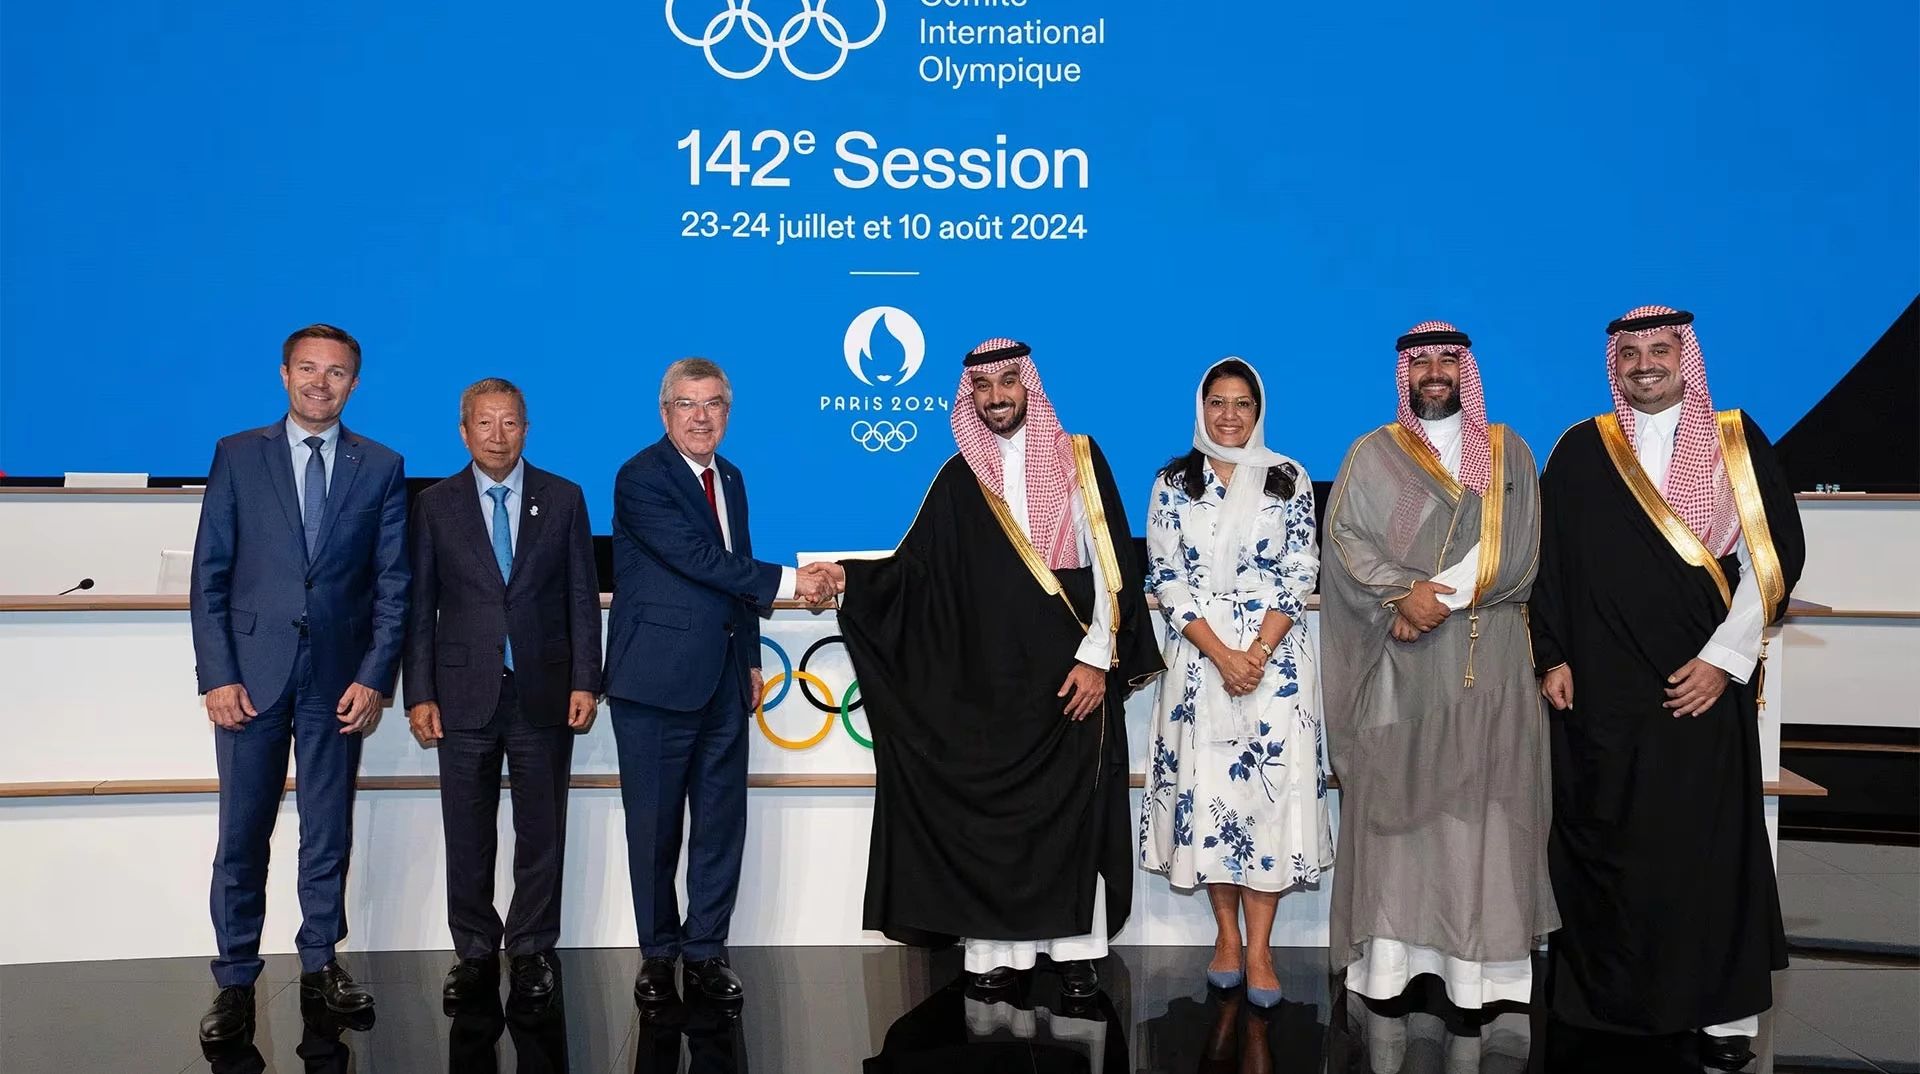 МОК створив Олімпійські ігри з кіберспорту - перший турнір відбудеться у 2025 році в Саудівській Аравії.